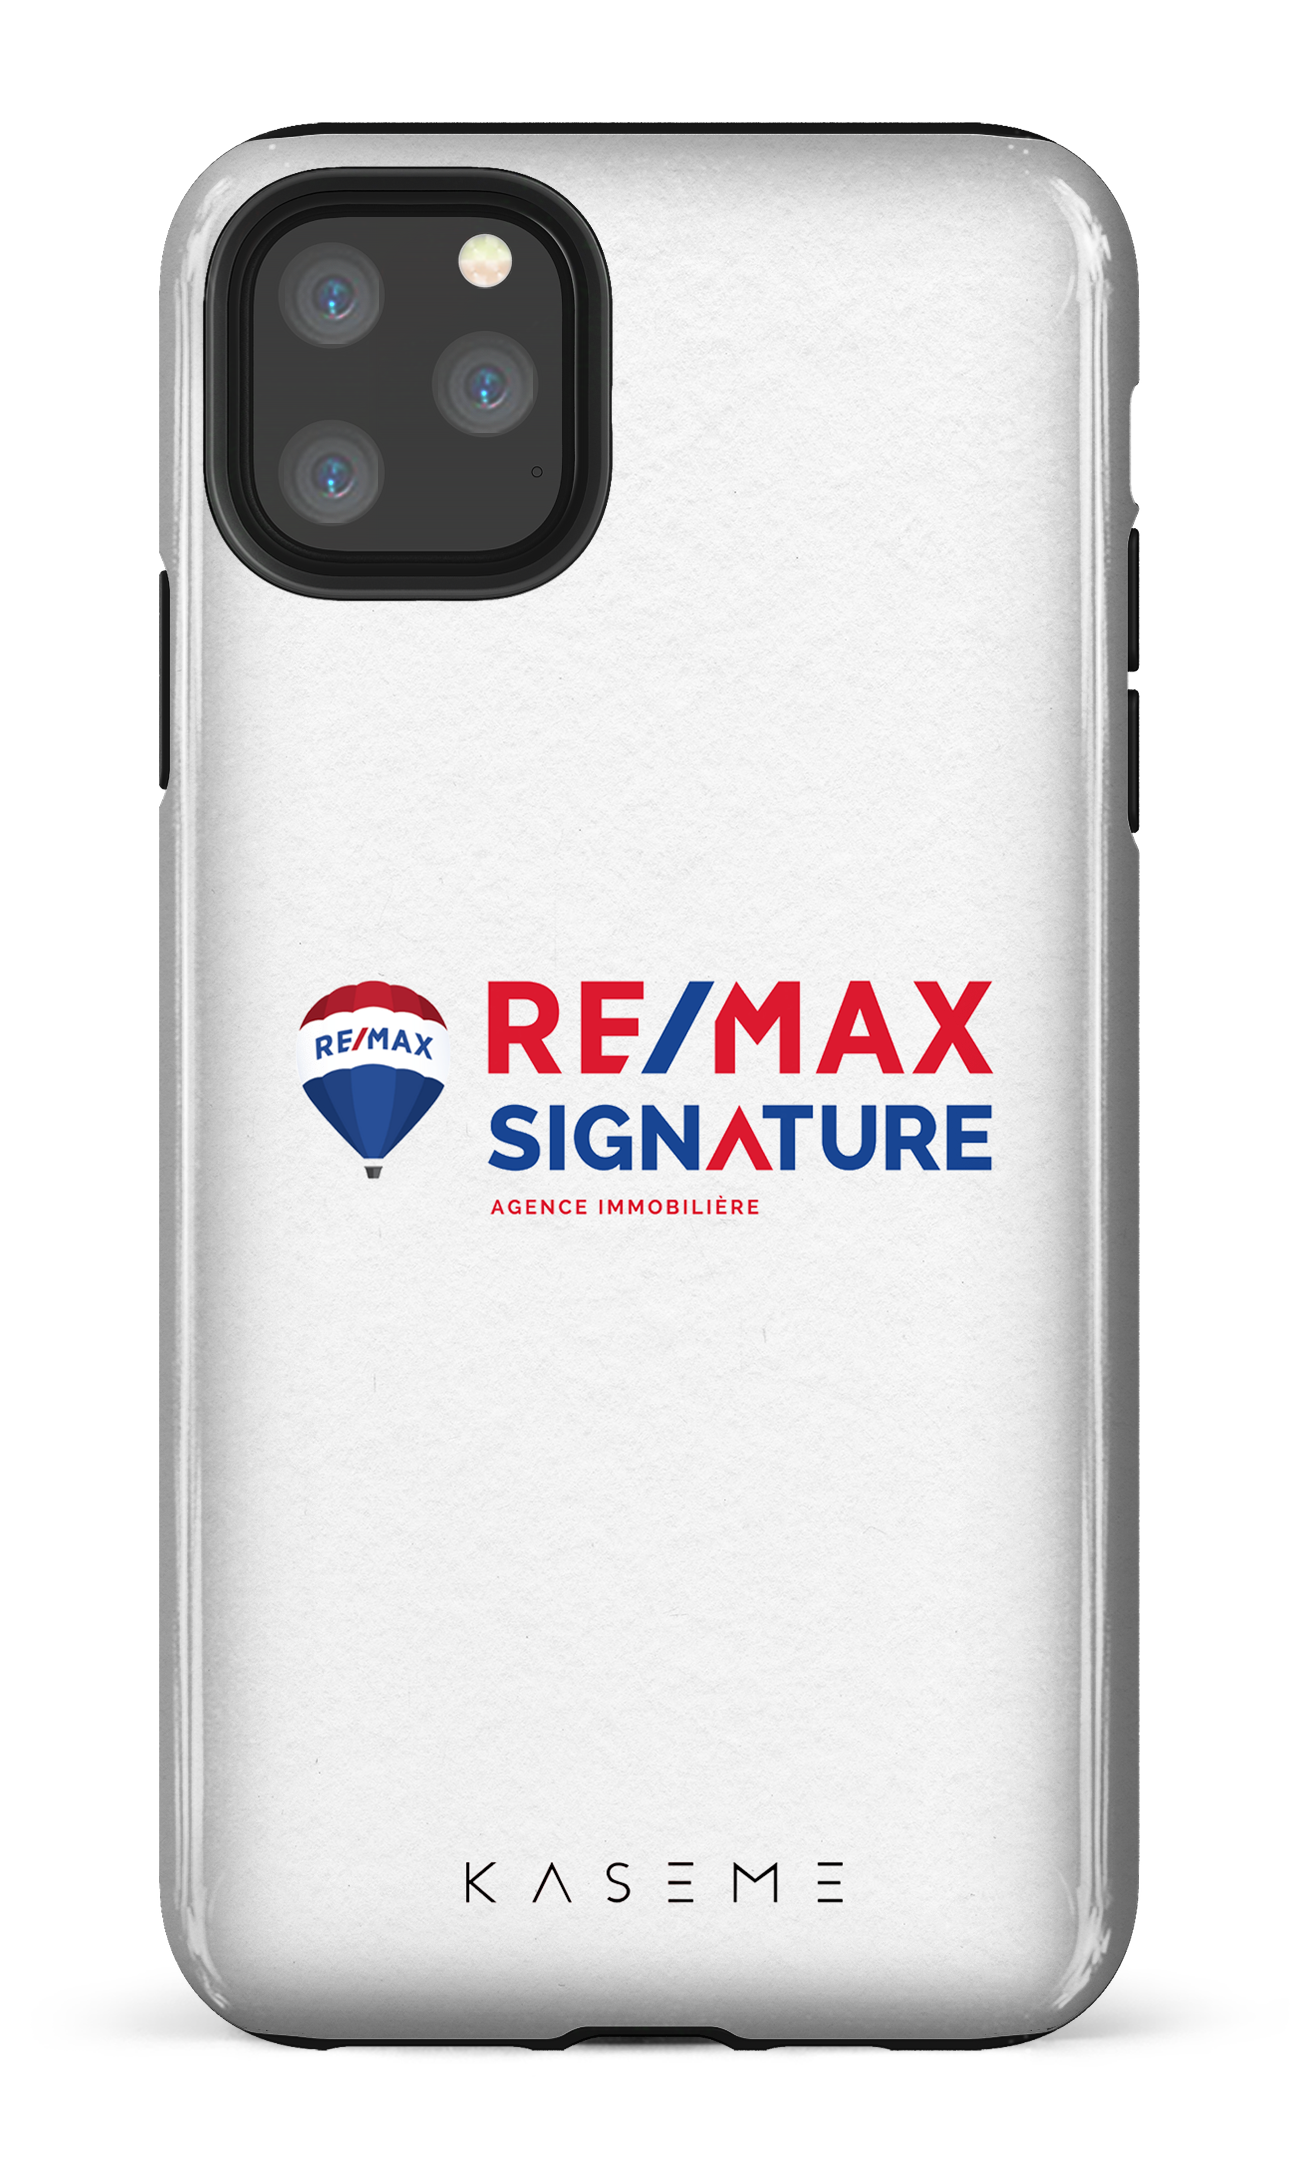 Remax Signature Blanc - iPhone 11 Pro Max